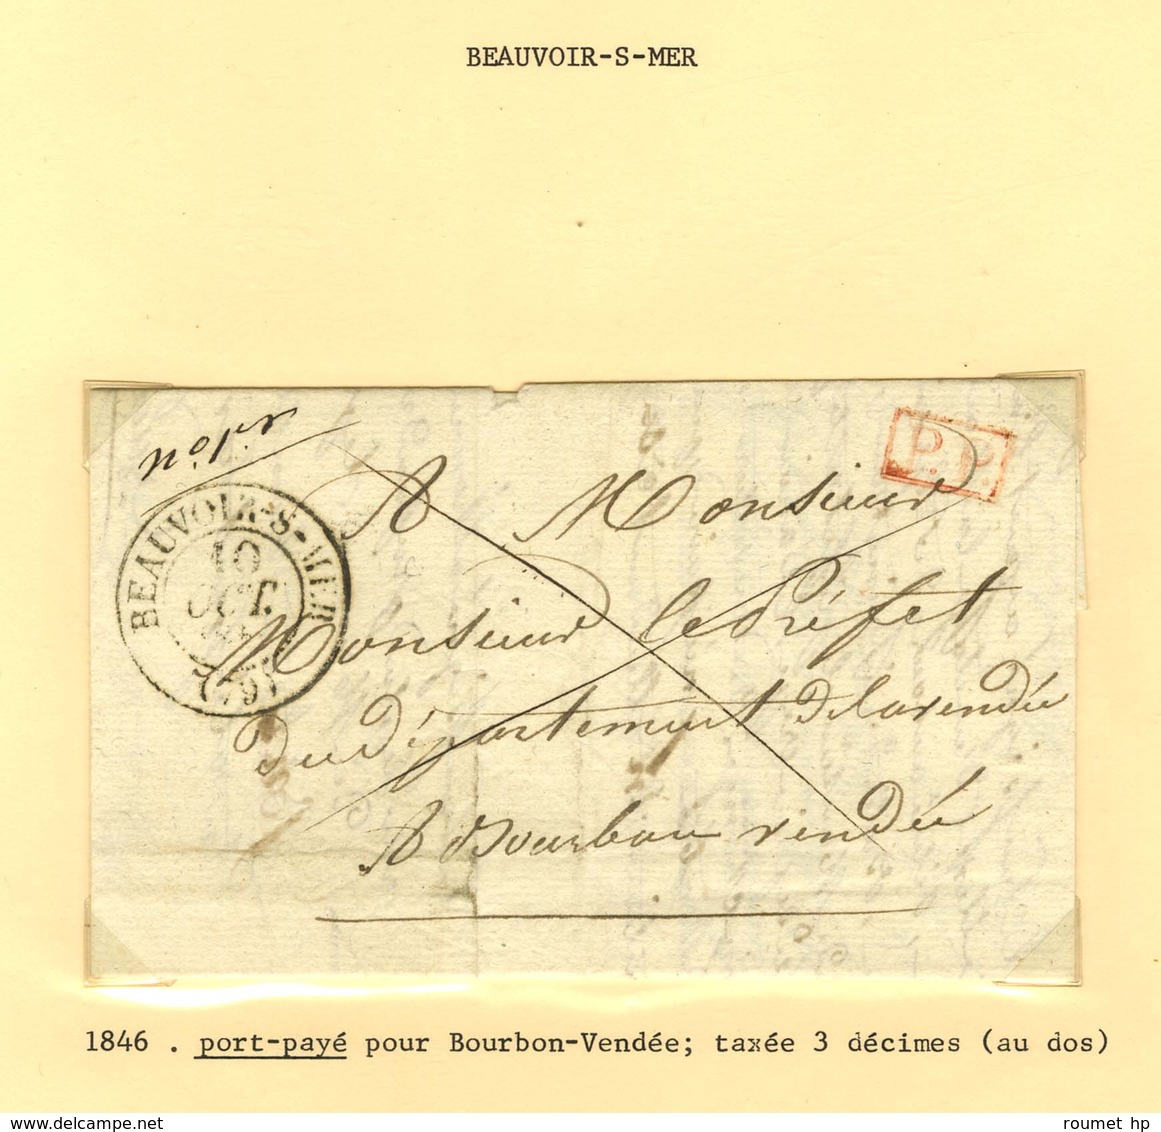 Lot de 18 marques postales et oblitérations de Beauvoir sur Mer. - B / TB.